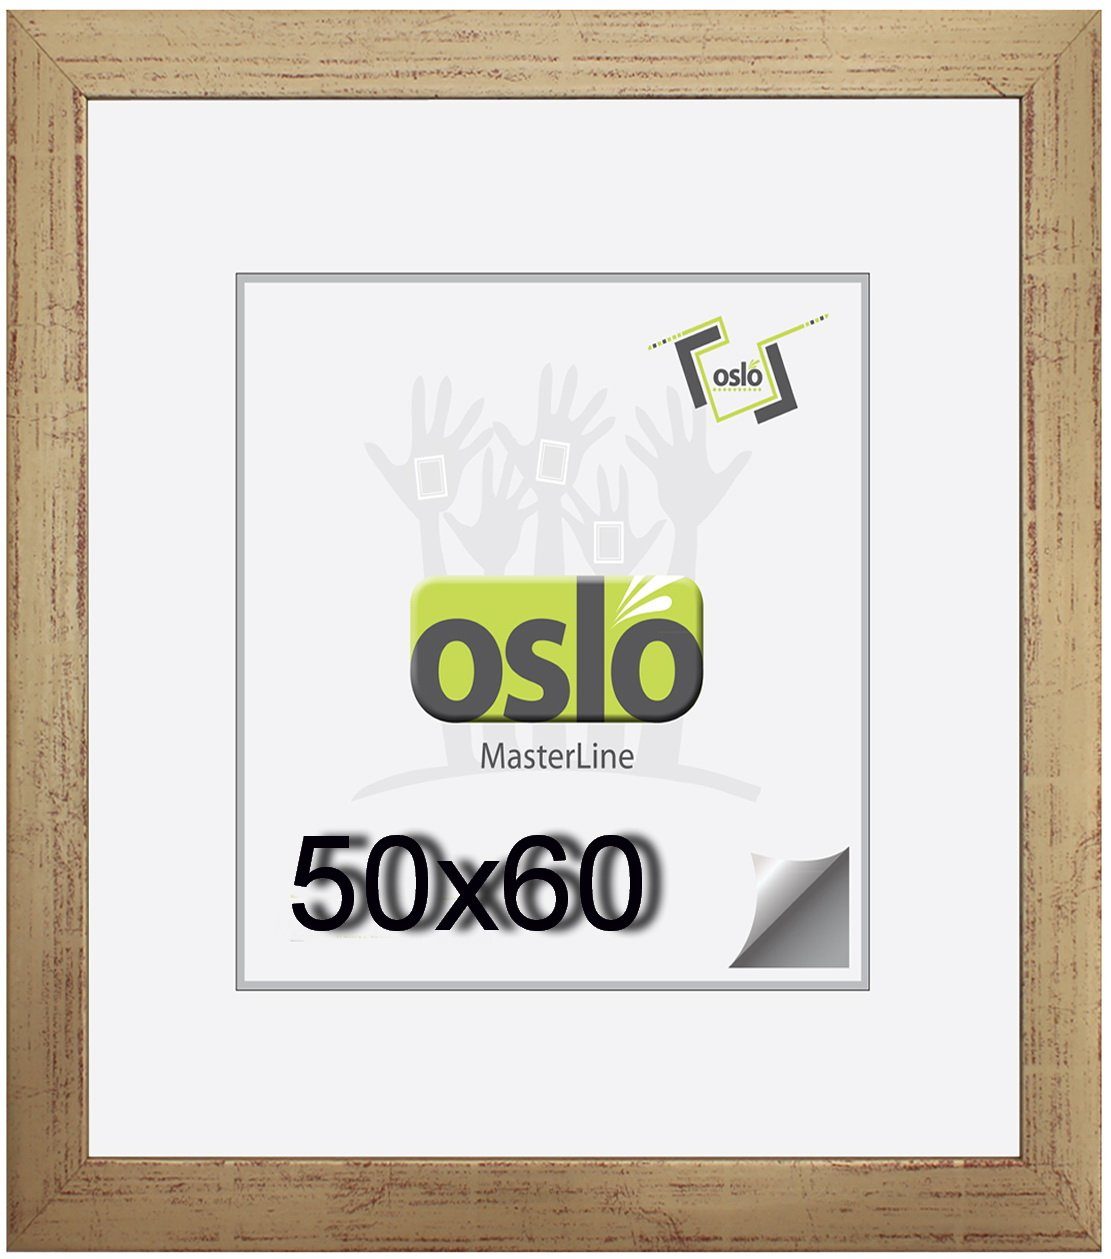 Oslo MasterLine Einzelrahmen Bilderrahmen 50 x 60 cm Holz massiv, Portraitrahmen, FSC-zertifiziert, (dunkelbraun} {gold} {weiß gekalkt), 50 x 60 gold Fotorahmen mit Echtglas, Passepartout geeignet